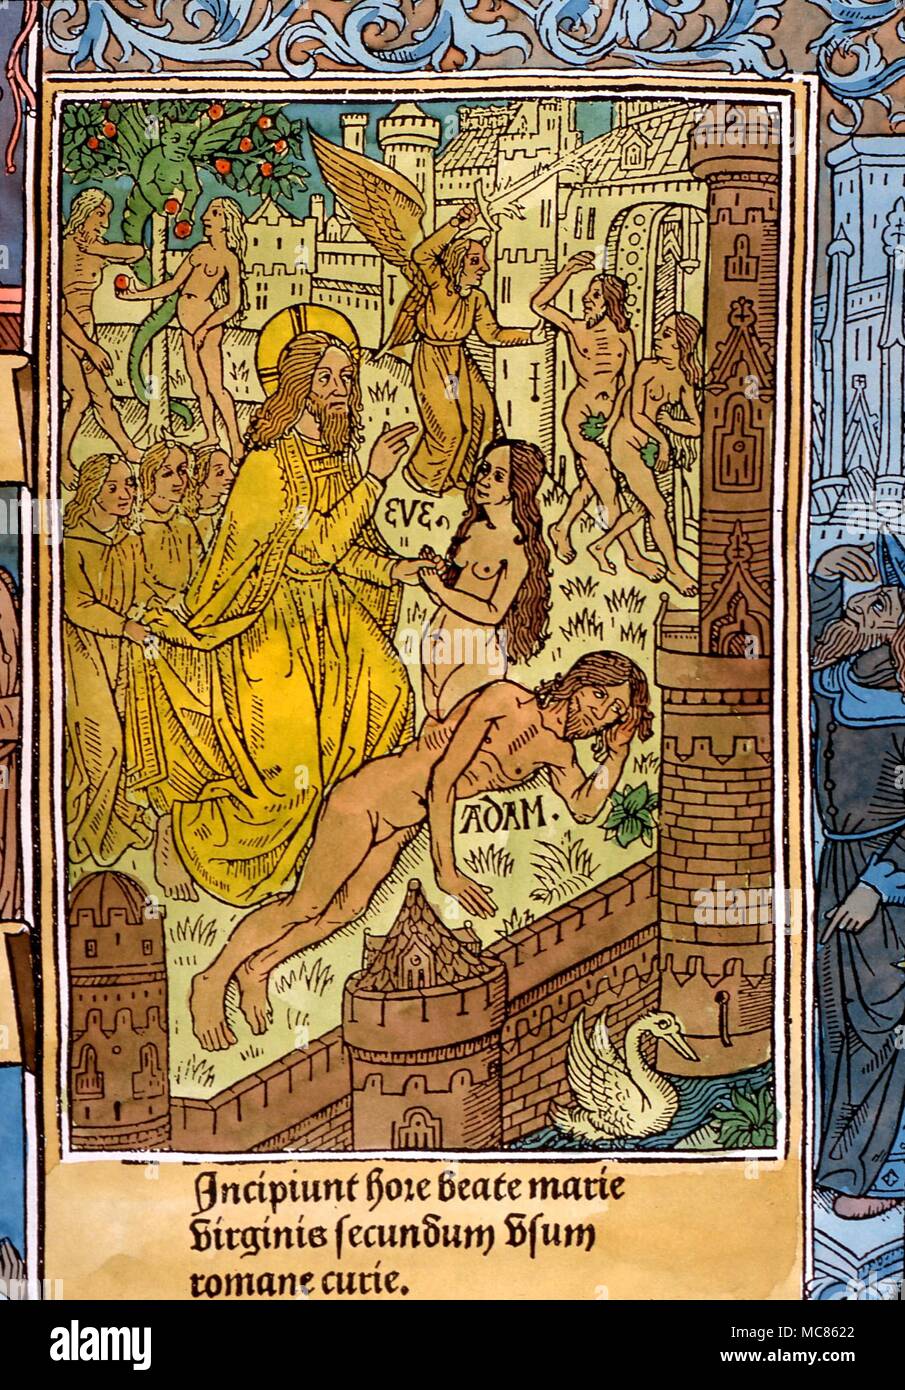 CHRISTIAN Création d'Eve à partir du corps d'Adam. Détail de gravure sur bois à partir de la Bible, vers 1510 Banque D'Images